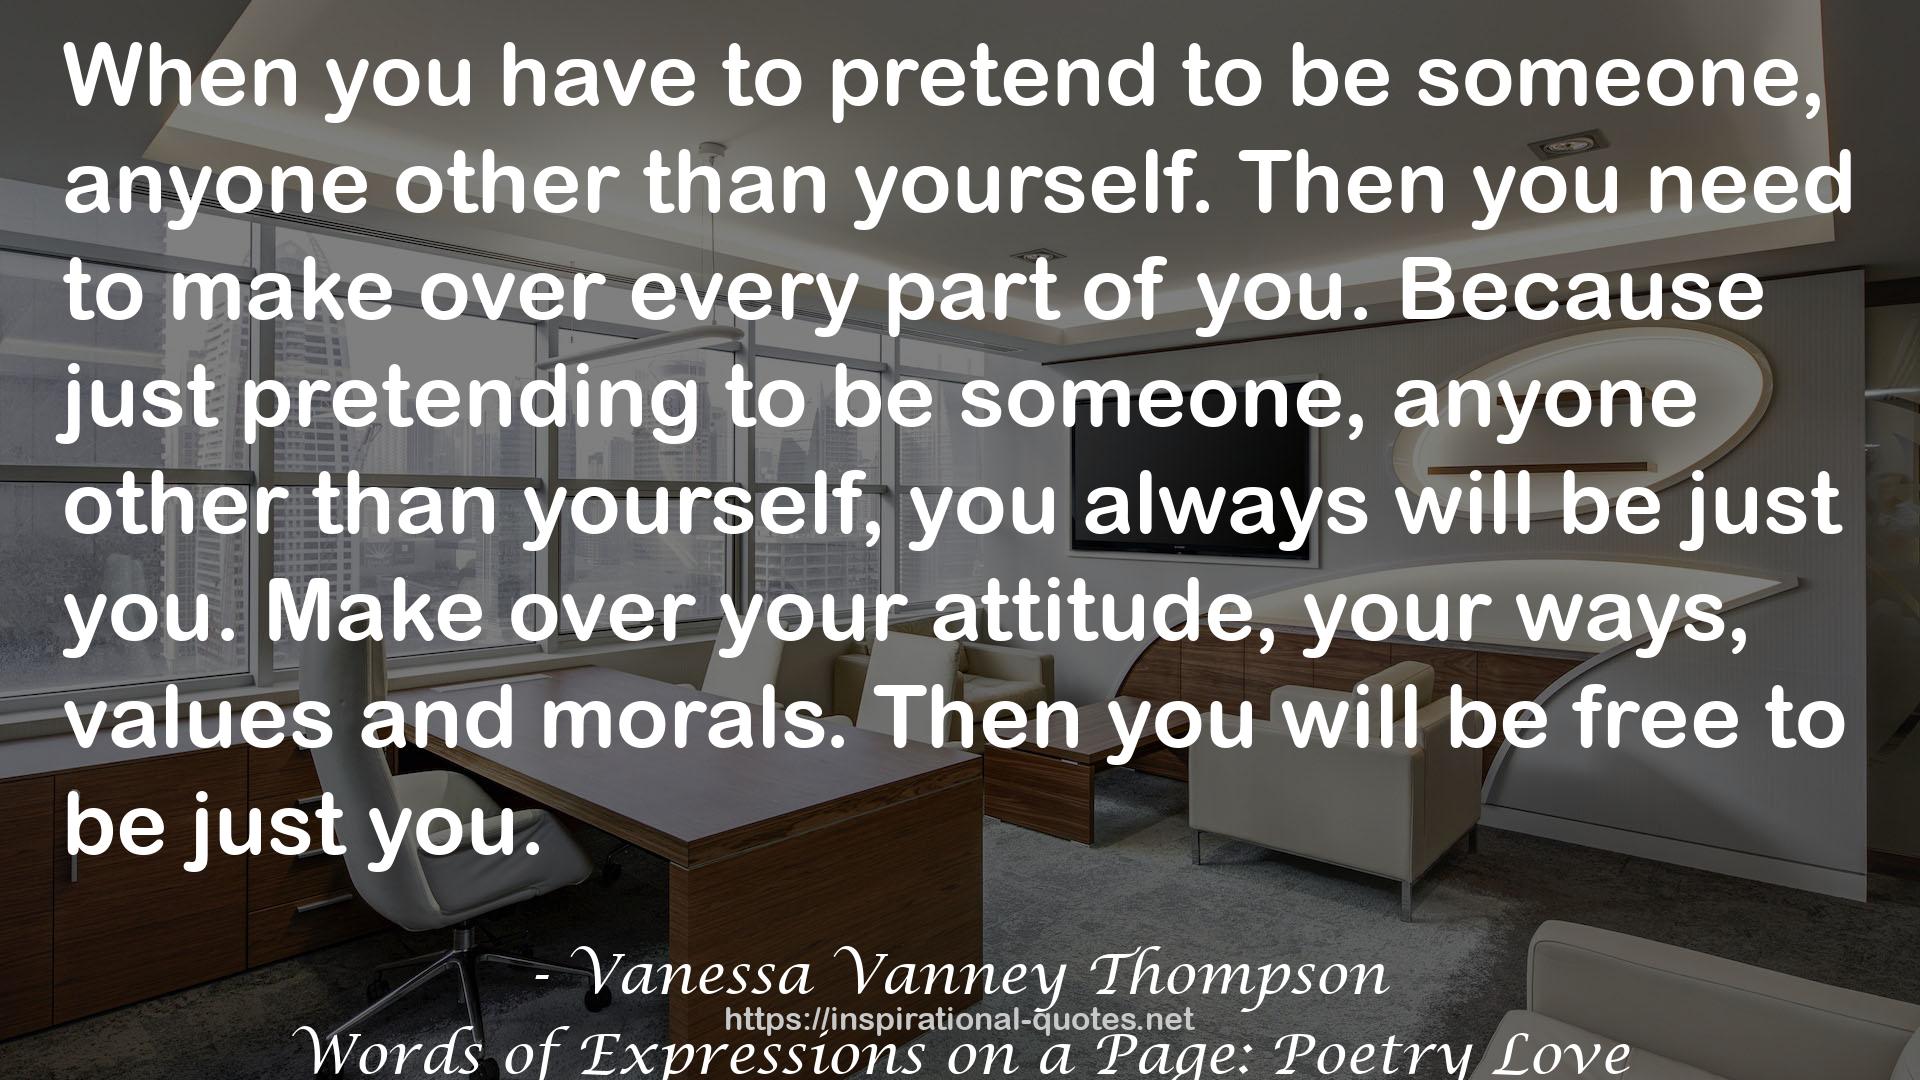 Vanessa Vanney Thompson QUOTES